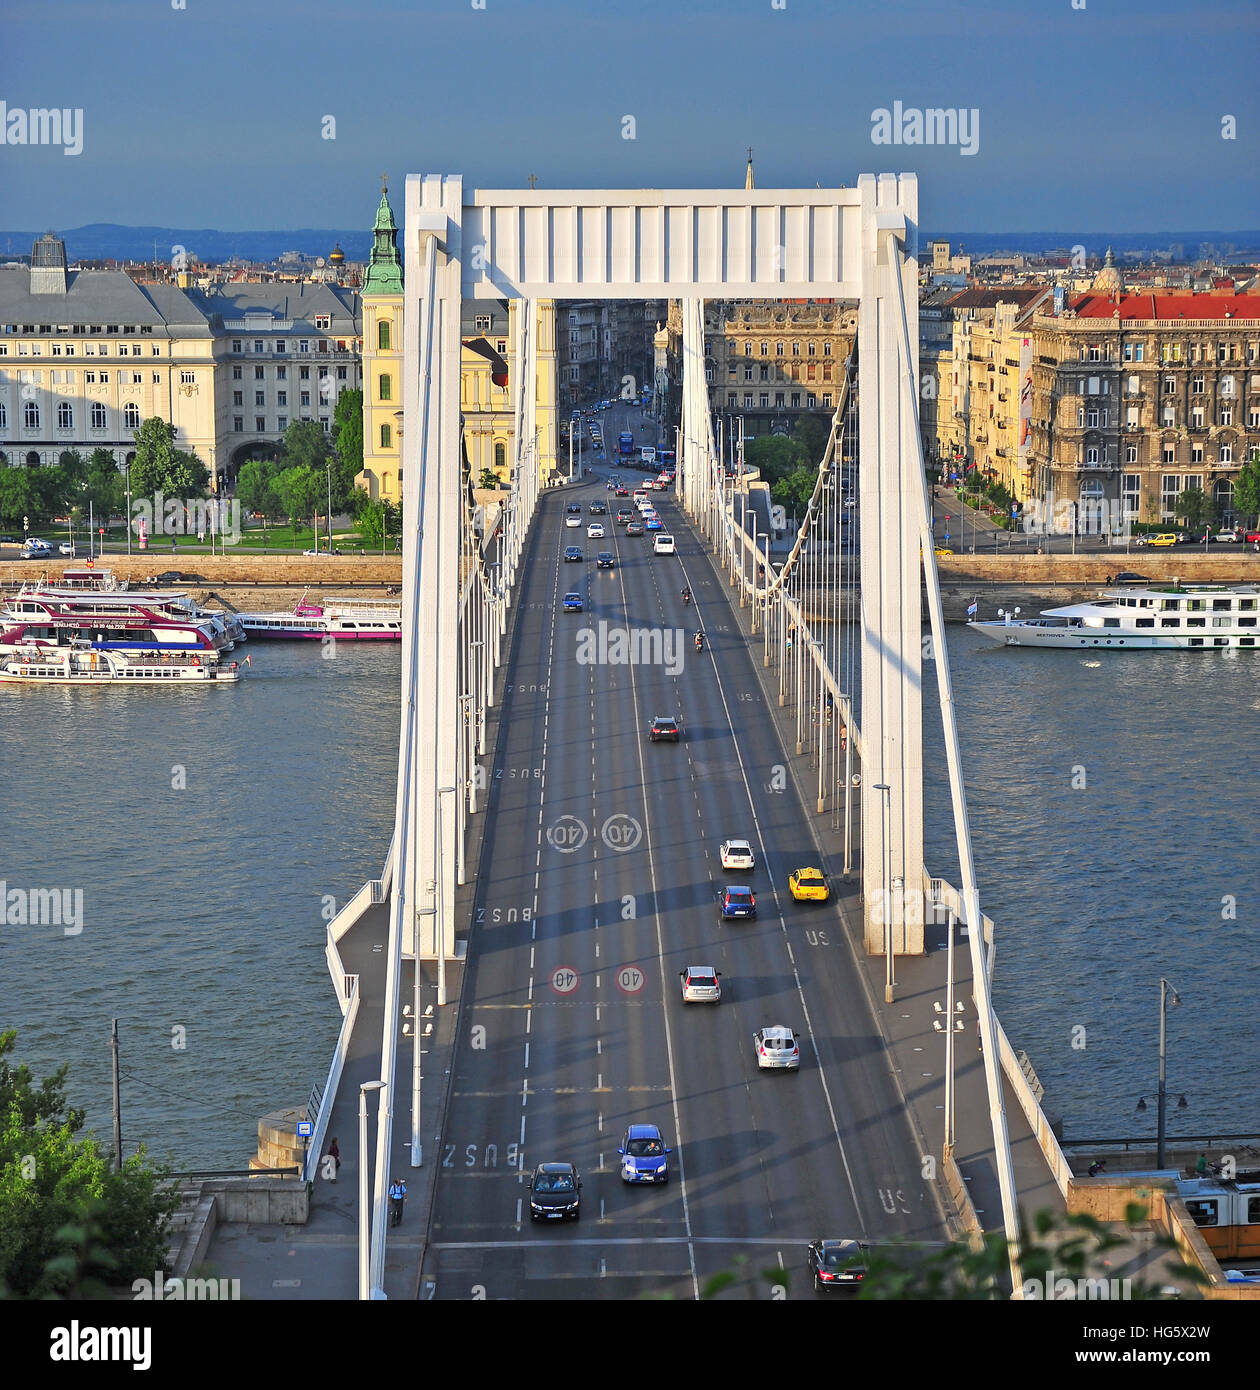 BUDAPEST, Ungarn - 23 Mai: Straßenverkehr auf der Elisabethbrücke in Budapest City am 23. Mai 2016. Budapest ist die Hauptstadt und größte Stadt von Ungarn. Stockfoto